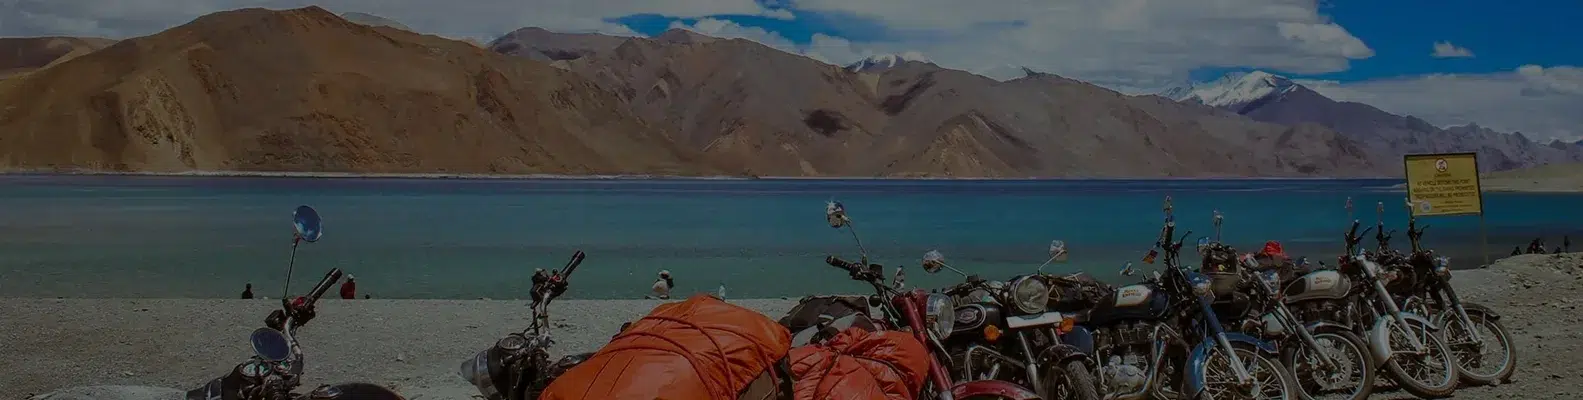 India Ladakh-3